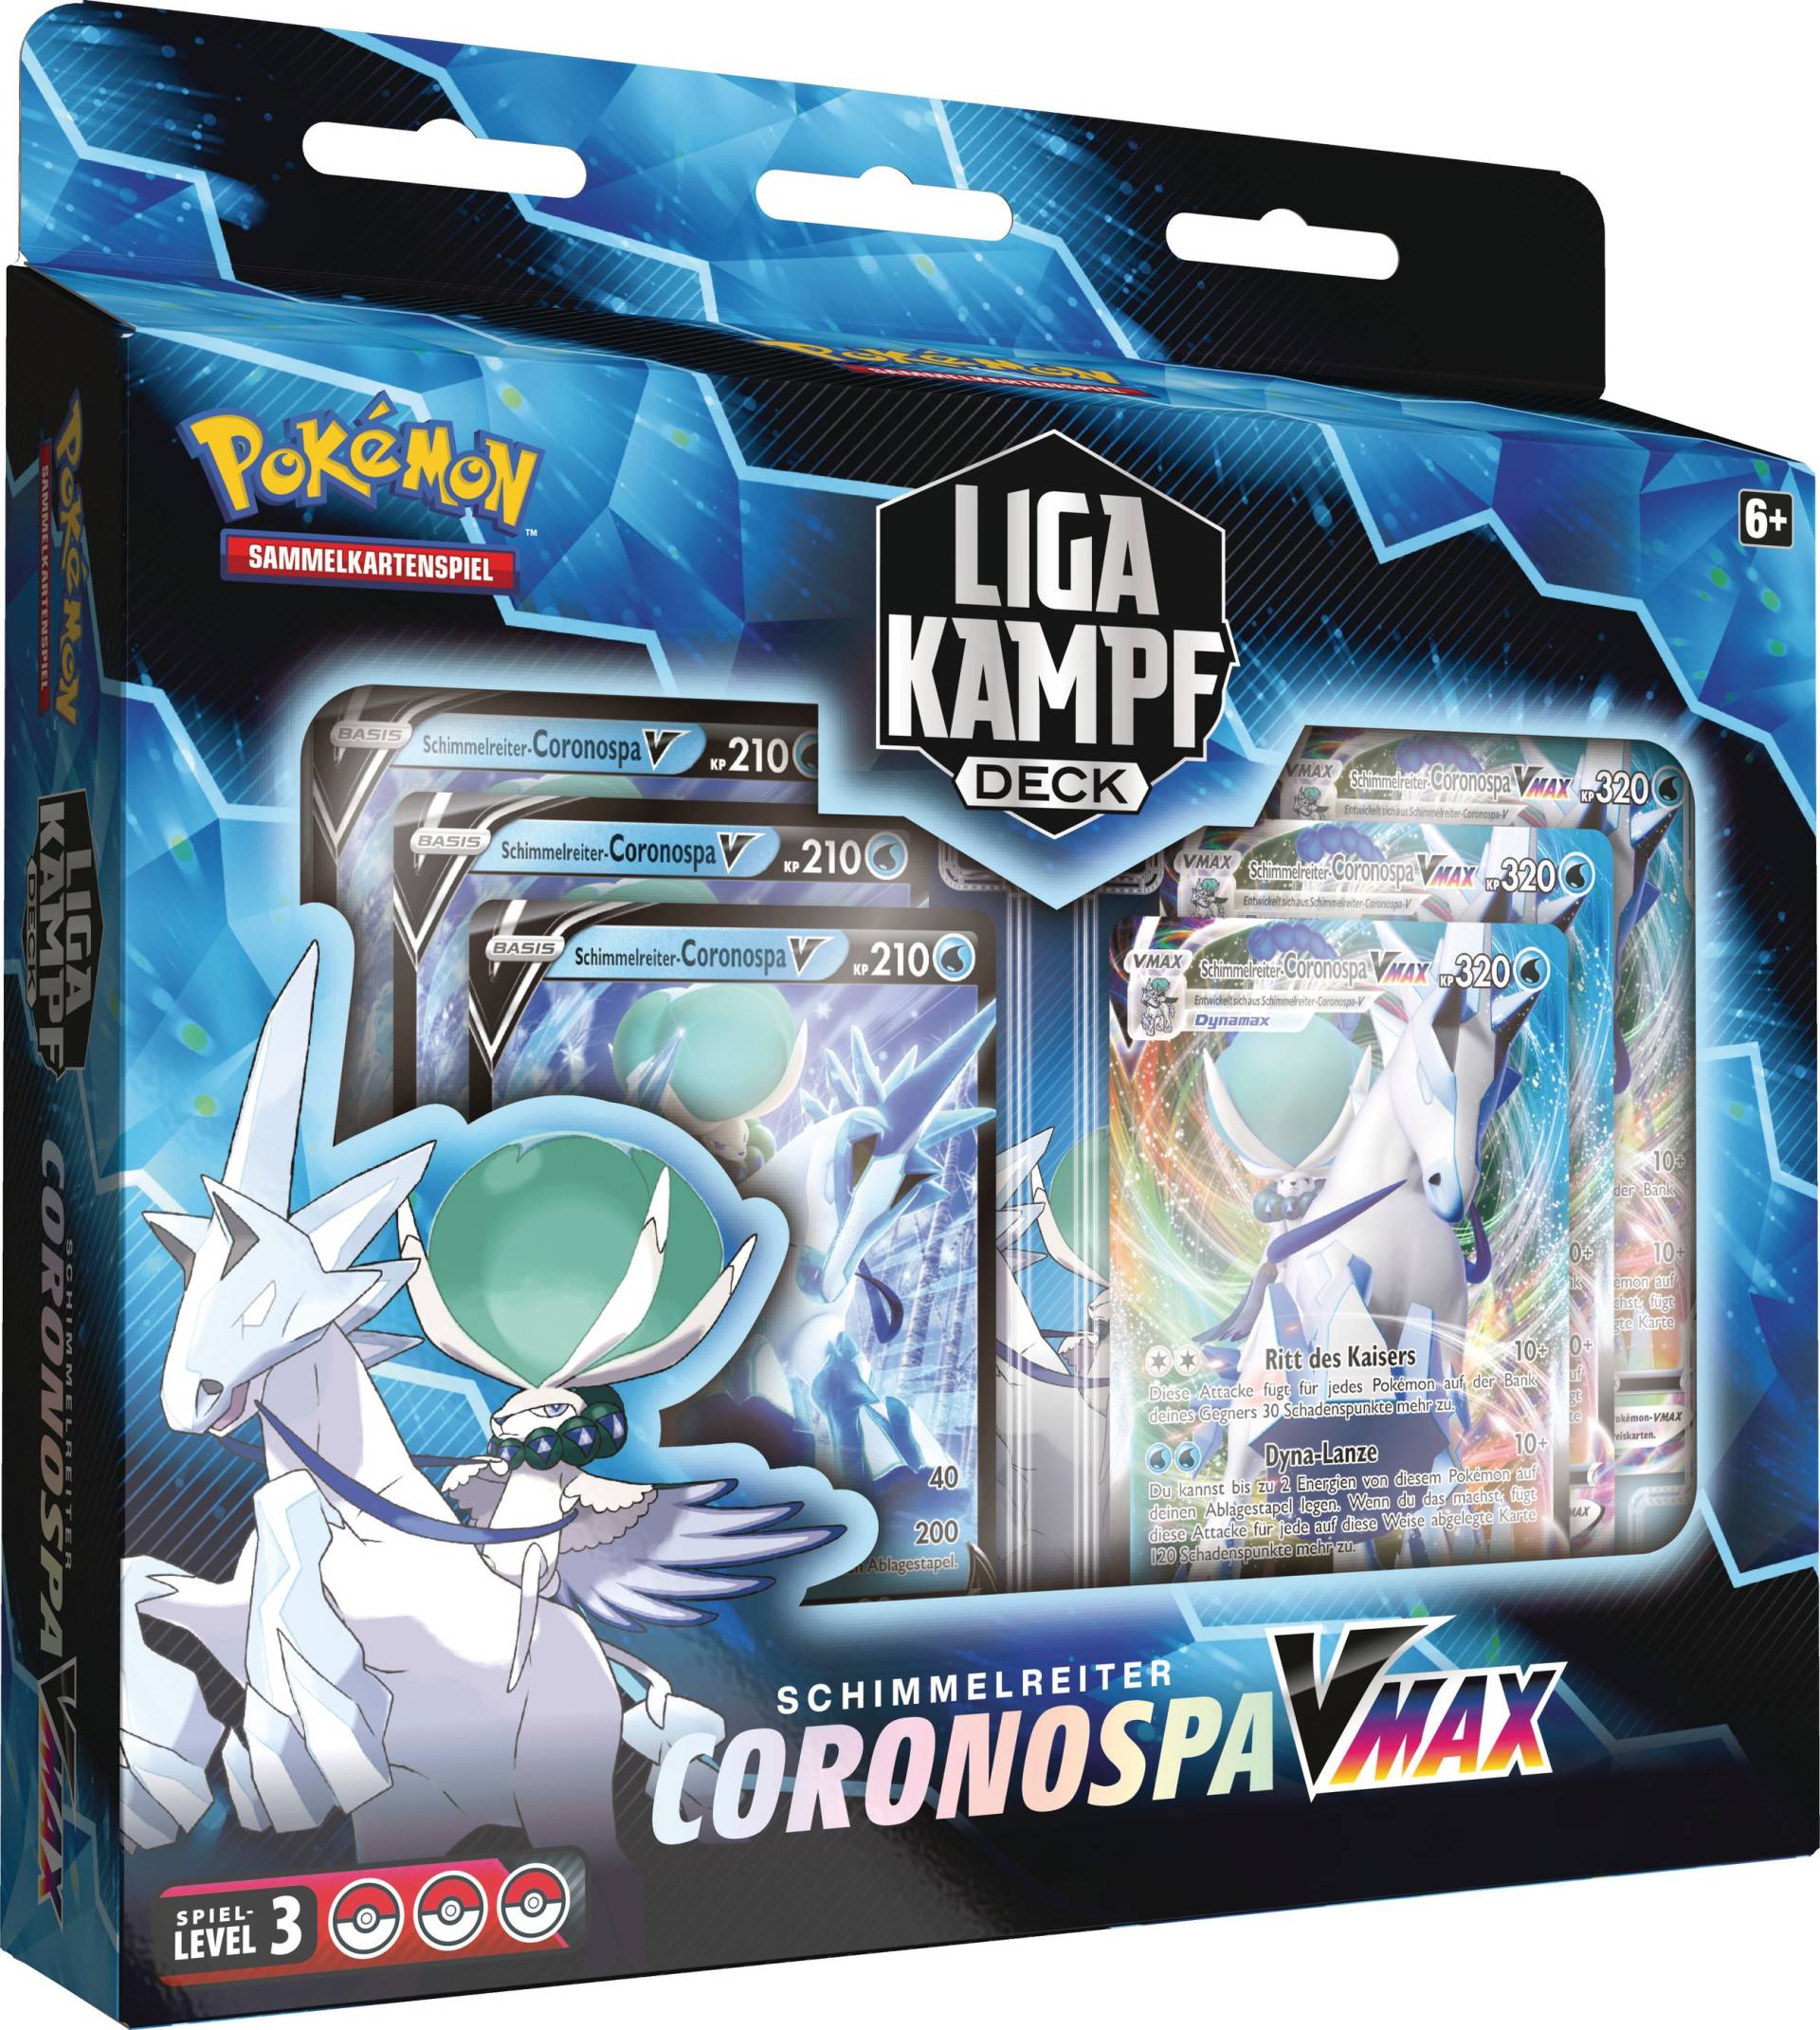 Schimmelreiter Coronospa-VMAX Liga-Kampf-Deck von The Pokemon Company